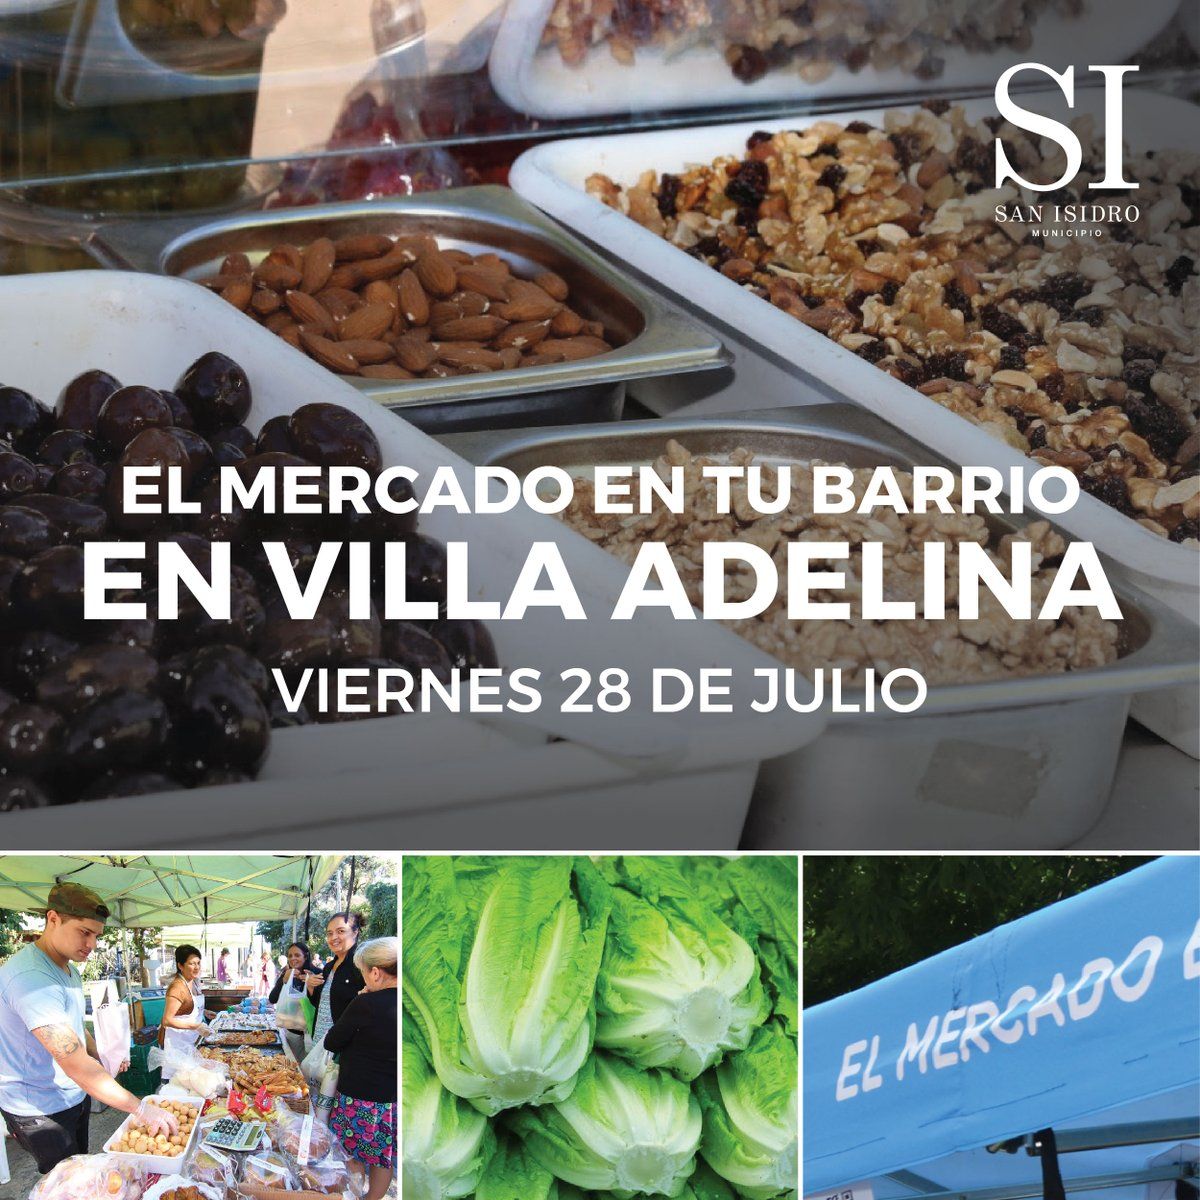 San Isidro: El programa "El Mercado en tu Barrio" llega al distrito